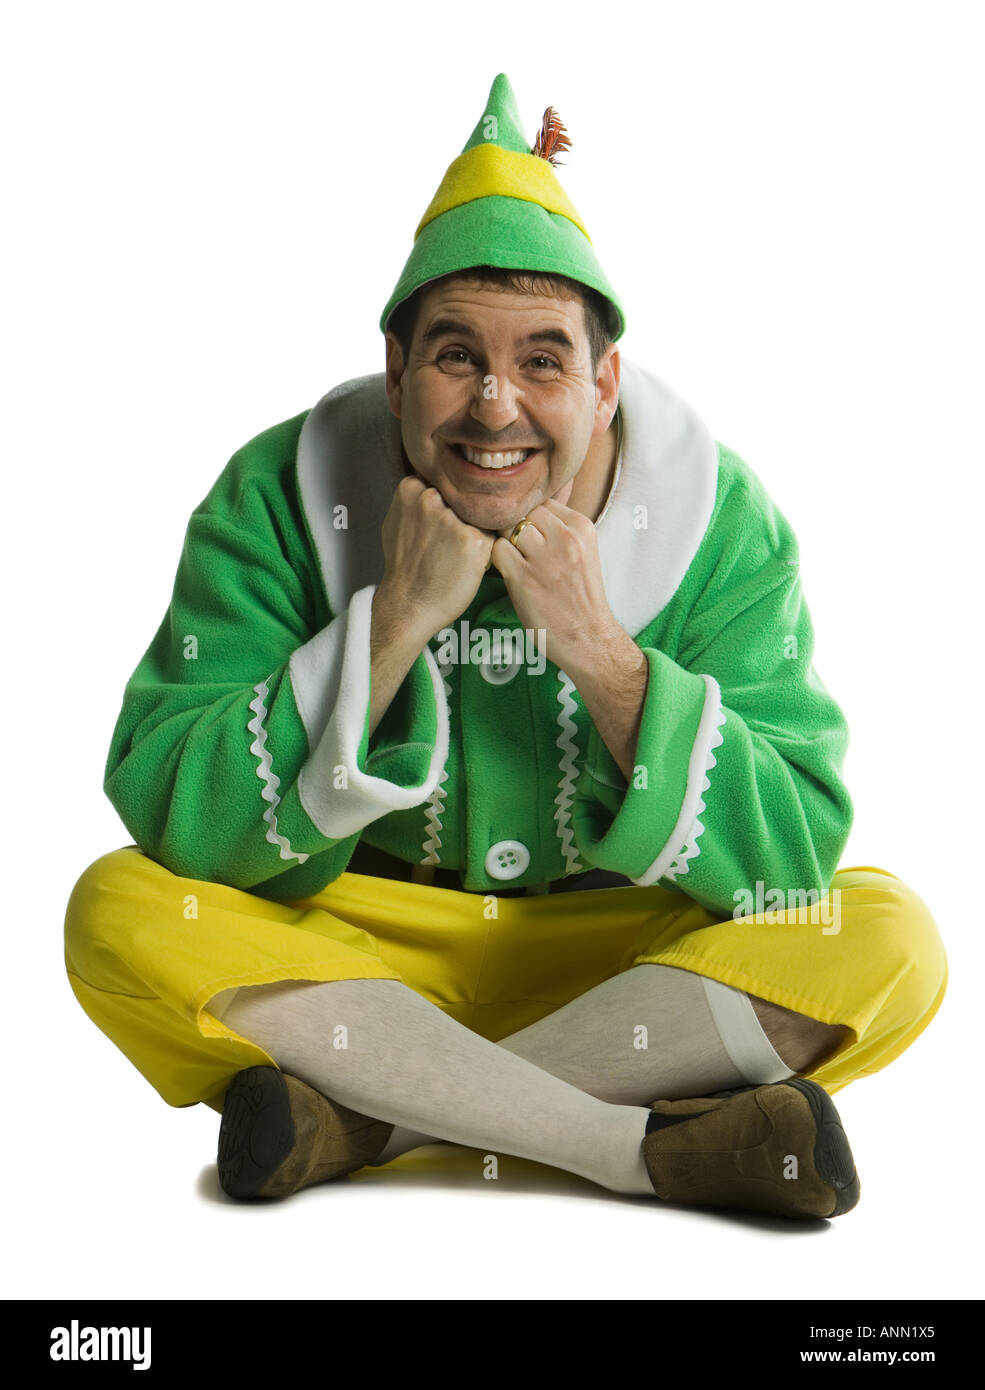 Ritratto di un giovane uomo che indossa un costume di Elf Foto Stock